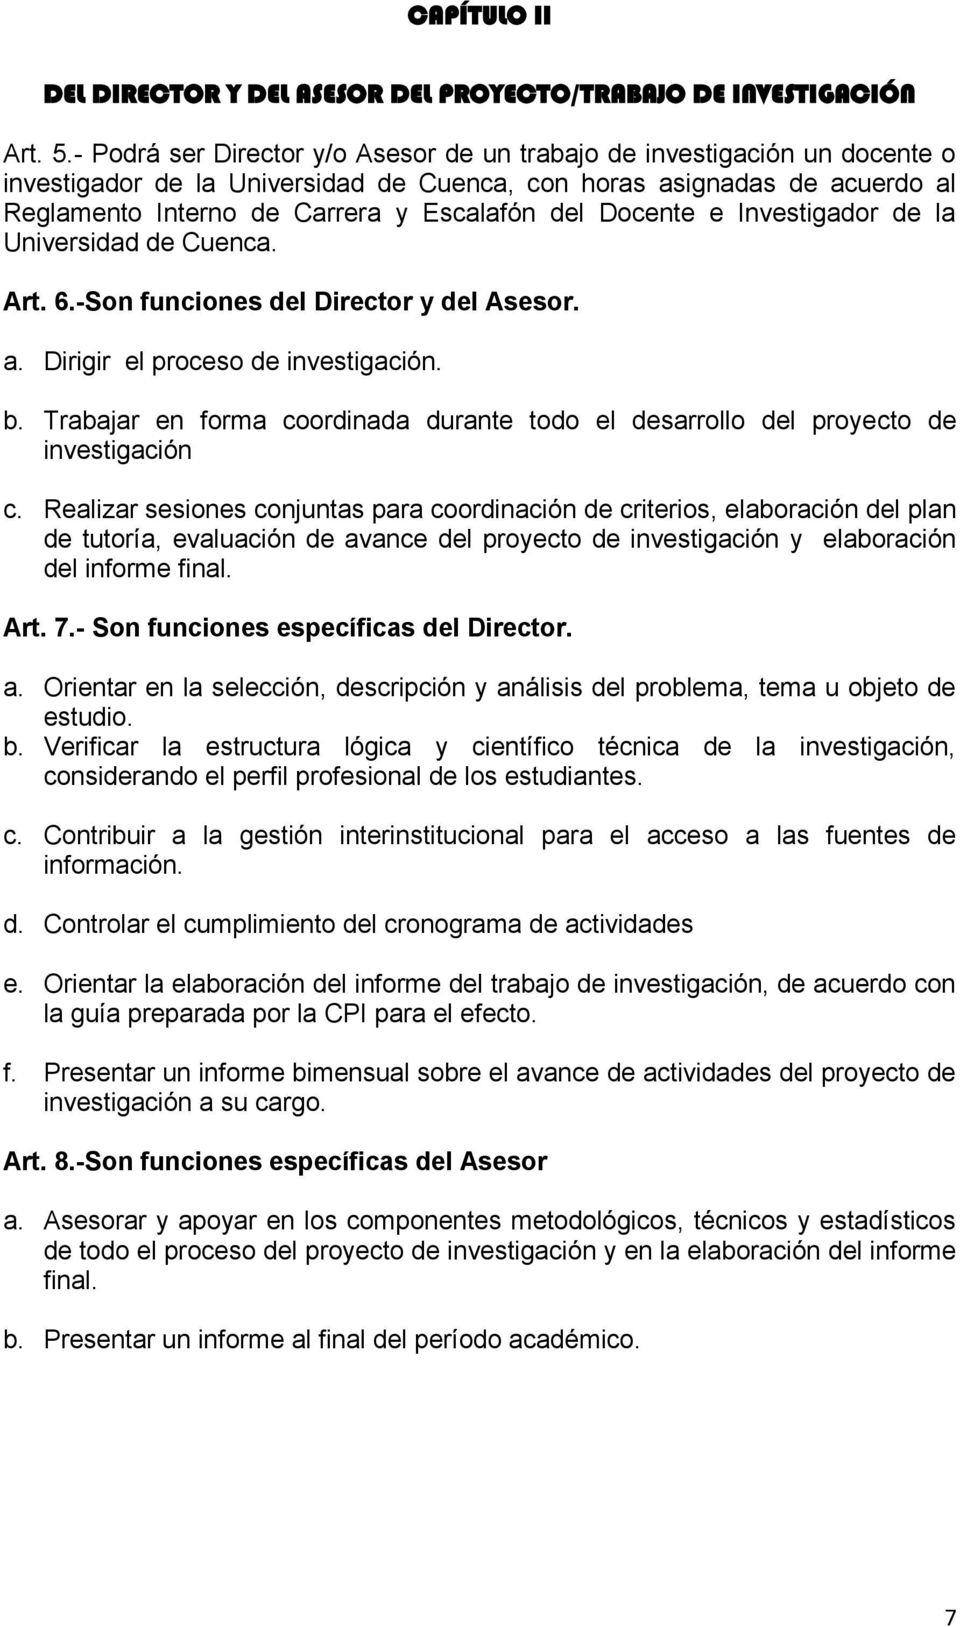 Docente e Investigador de la Universidad de Cuenca. Art. 6.-Son funciones del Director y del Asesor. a. Dirigir el proceso de investigación. b.